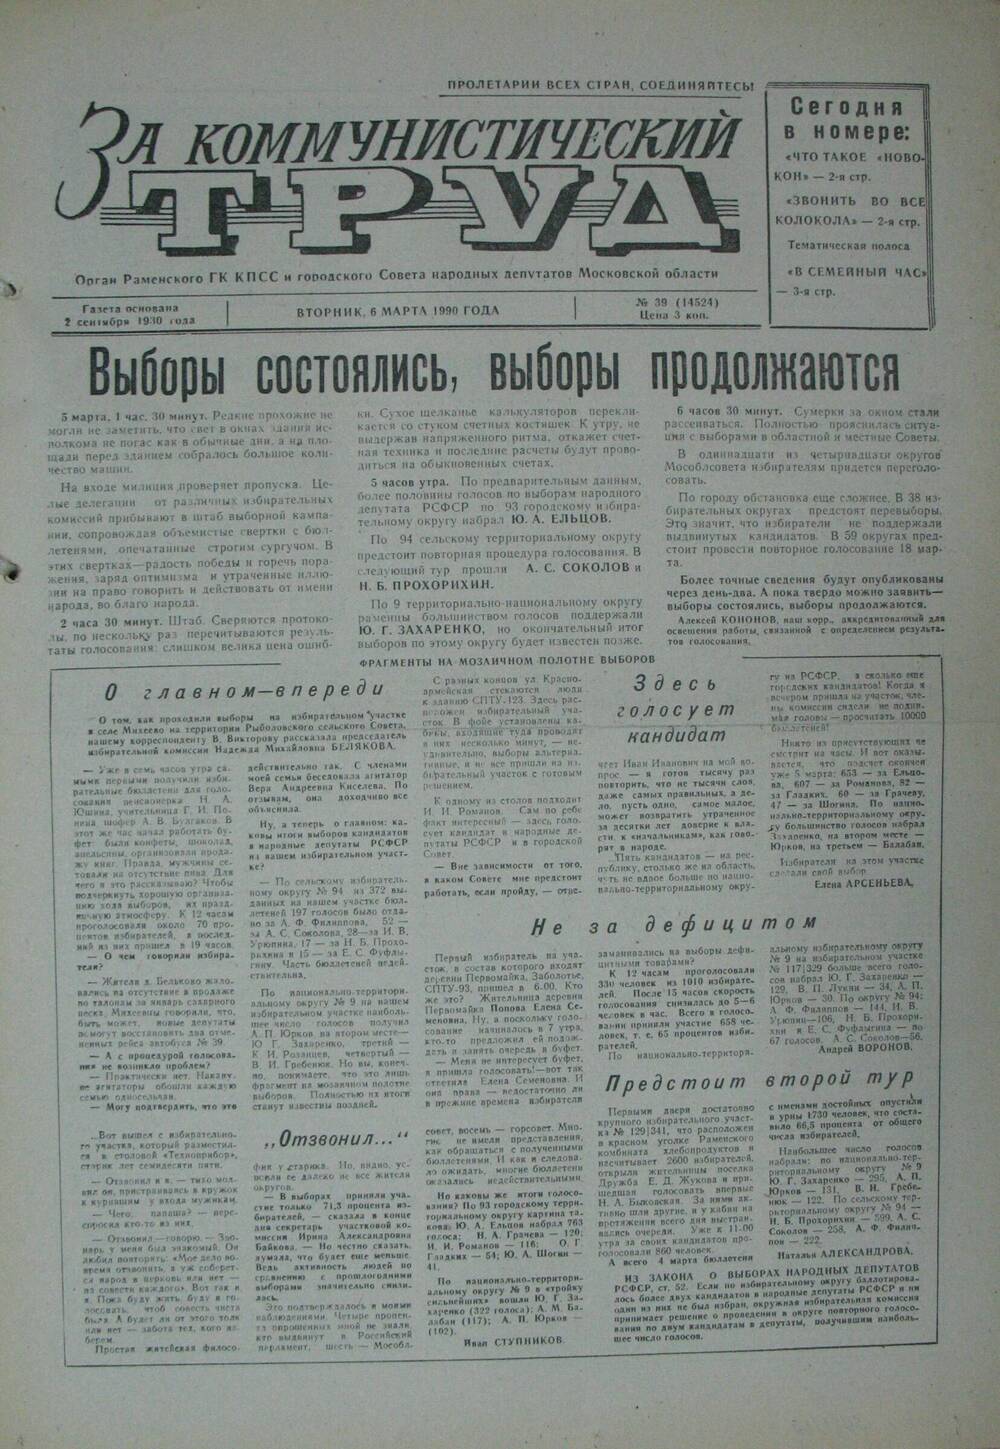 За коммунистический труд, газета № 39 от 6 марта 1990г